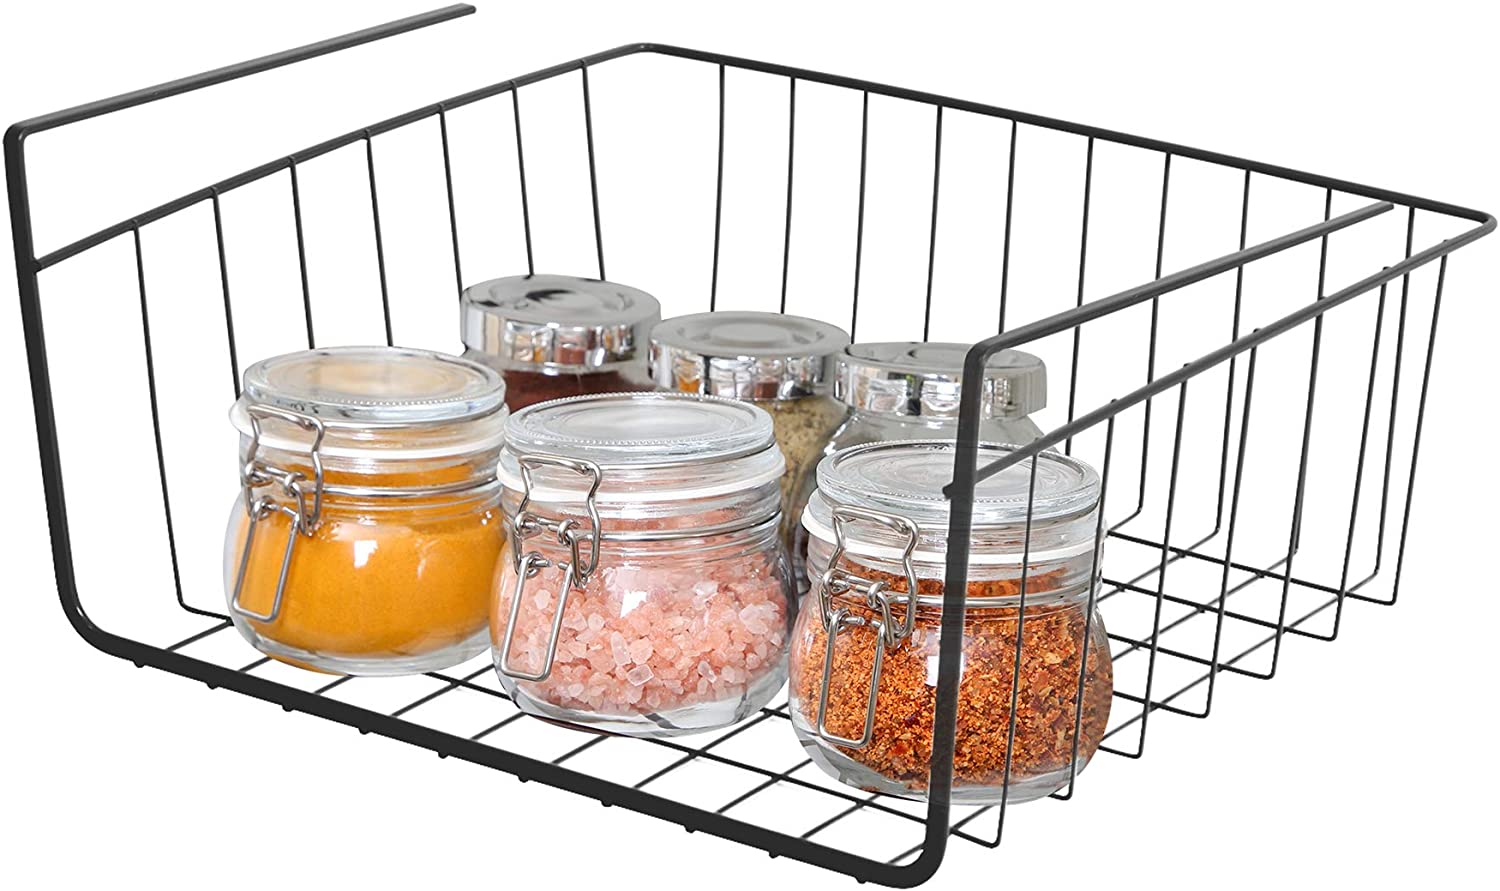 https://www.shopsmartdesign.com/cdn/shop/products/small-undershelf-storage-basket-smart-design-kitchen-8257188-incrementing-number-175397.jpg?v=1679337008